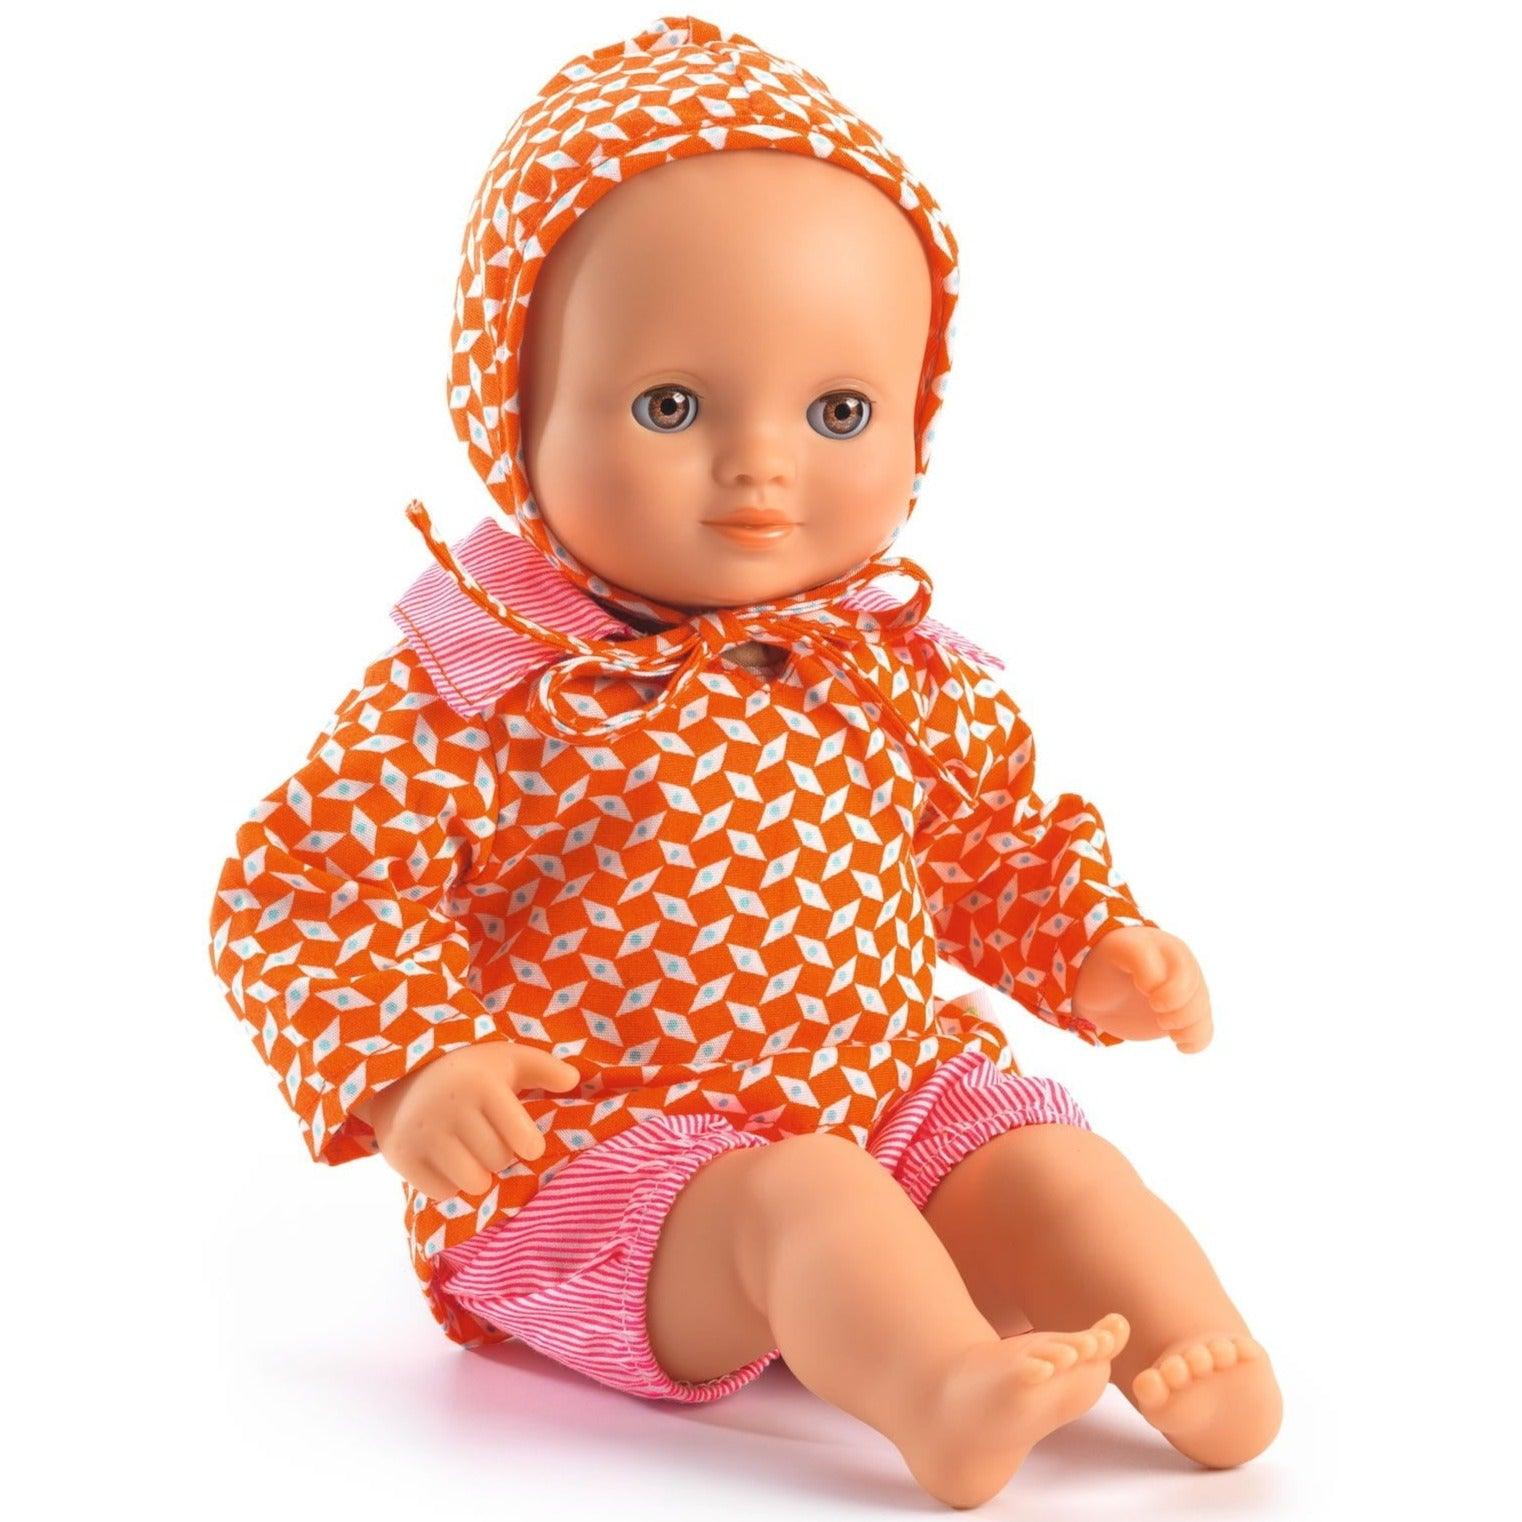 Puma: orange og pink tøj til Petite Pan dukke